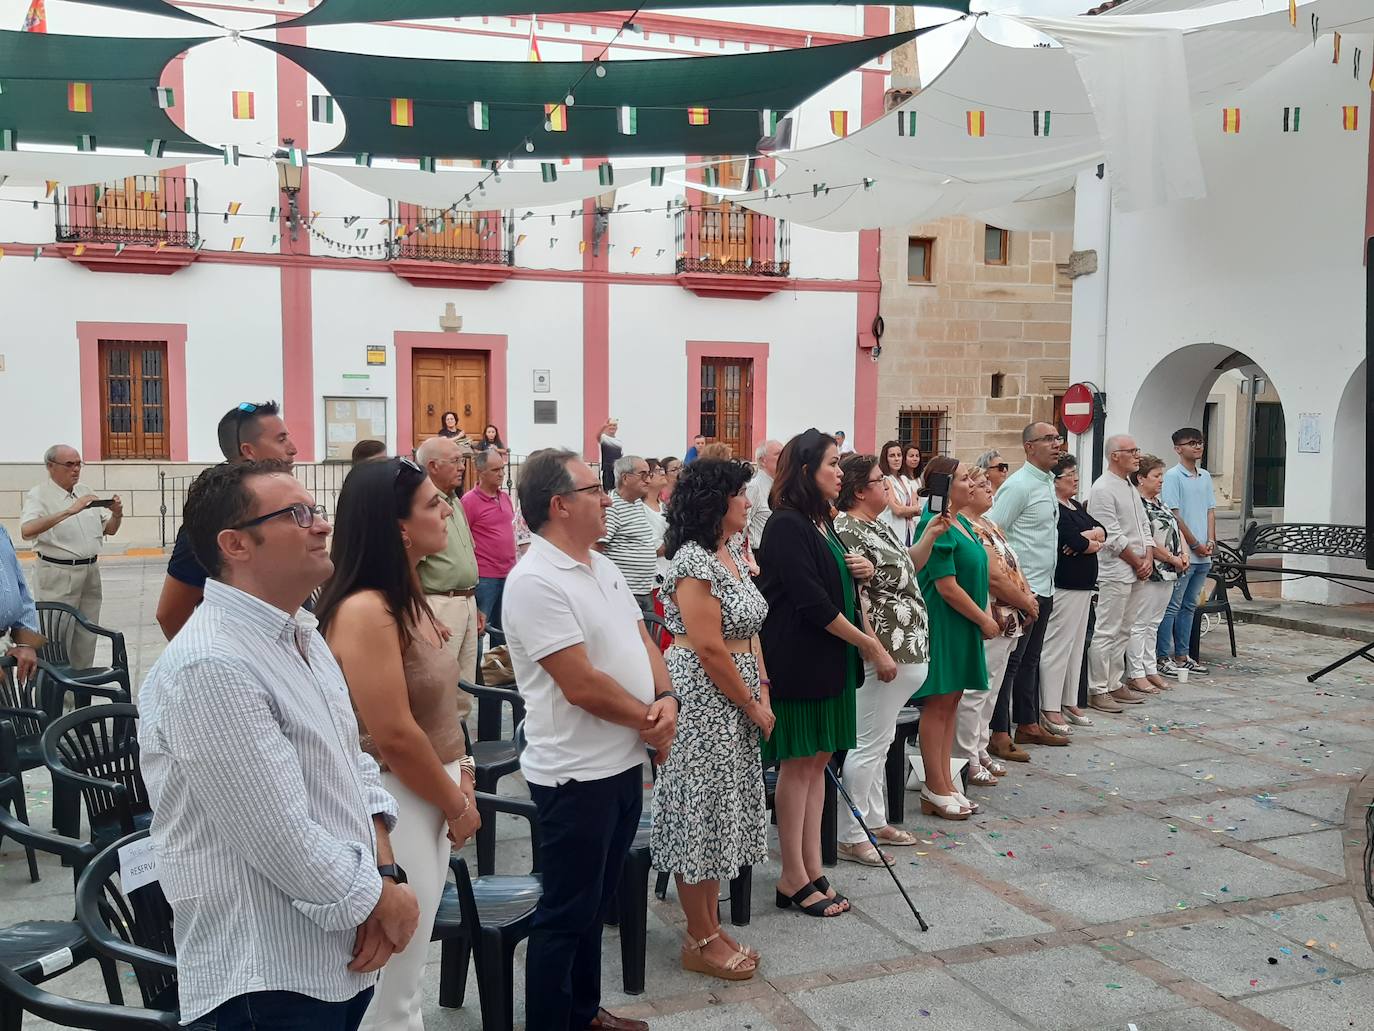 Imagen principal - Primer acto institucional por el Día de Extremadura en Casar de Cáceres